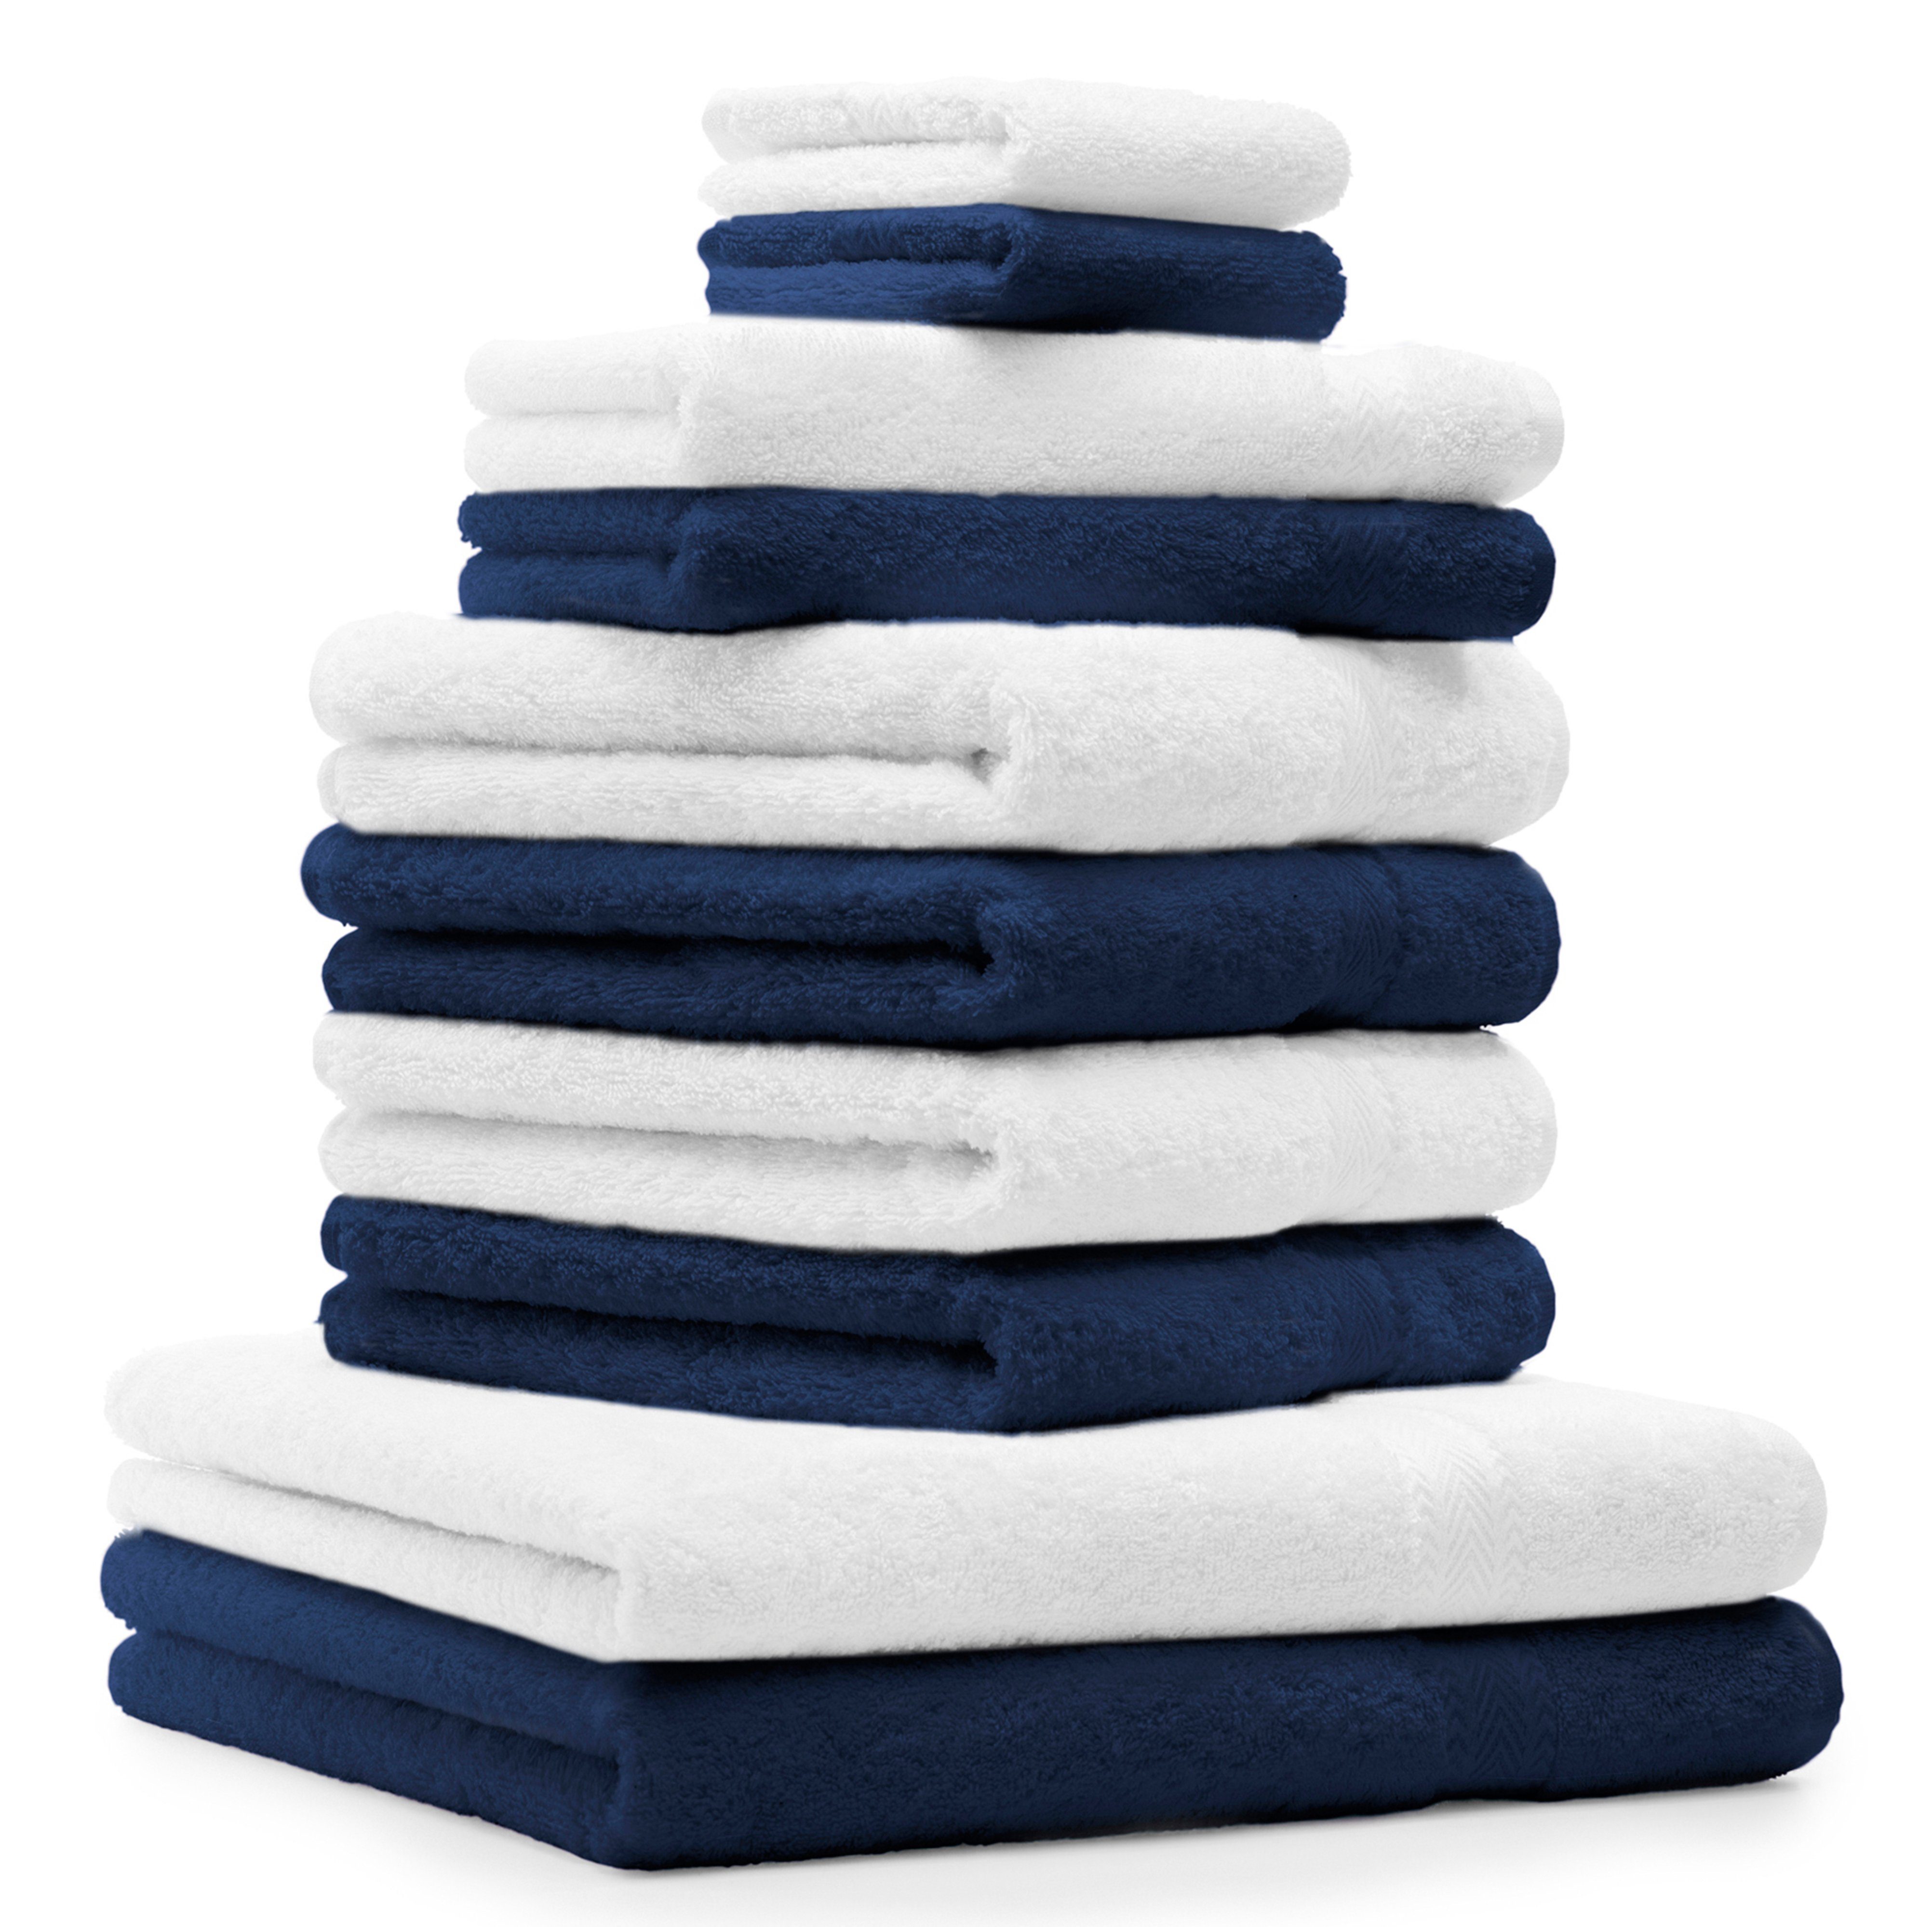 Betz Handtuch Set 10-TLG. Handtuch-Set Classic Farbe dunkelblau und weiß, 100% Baumwolle